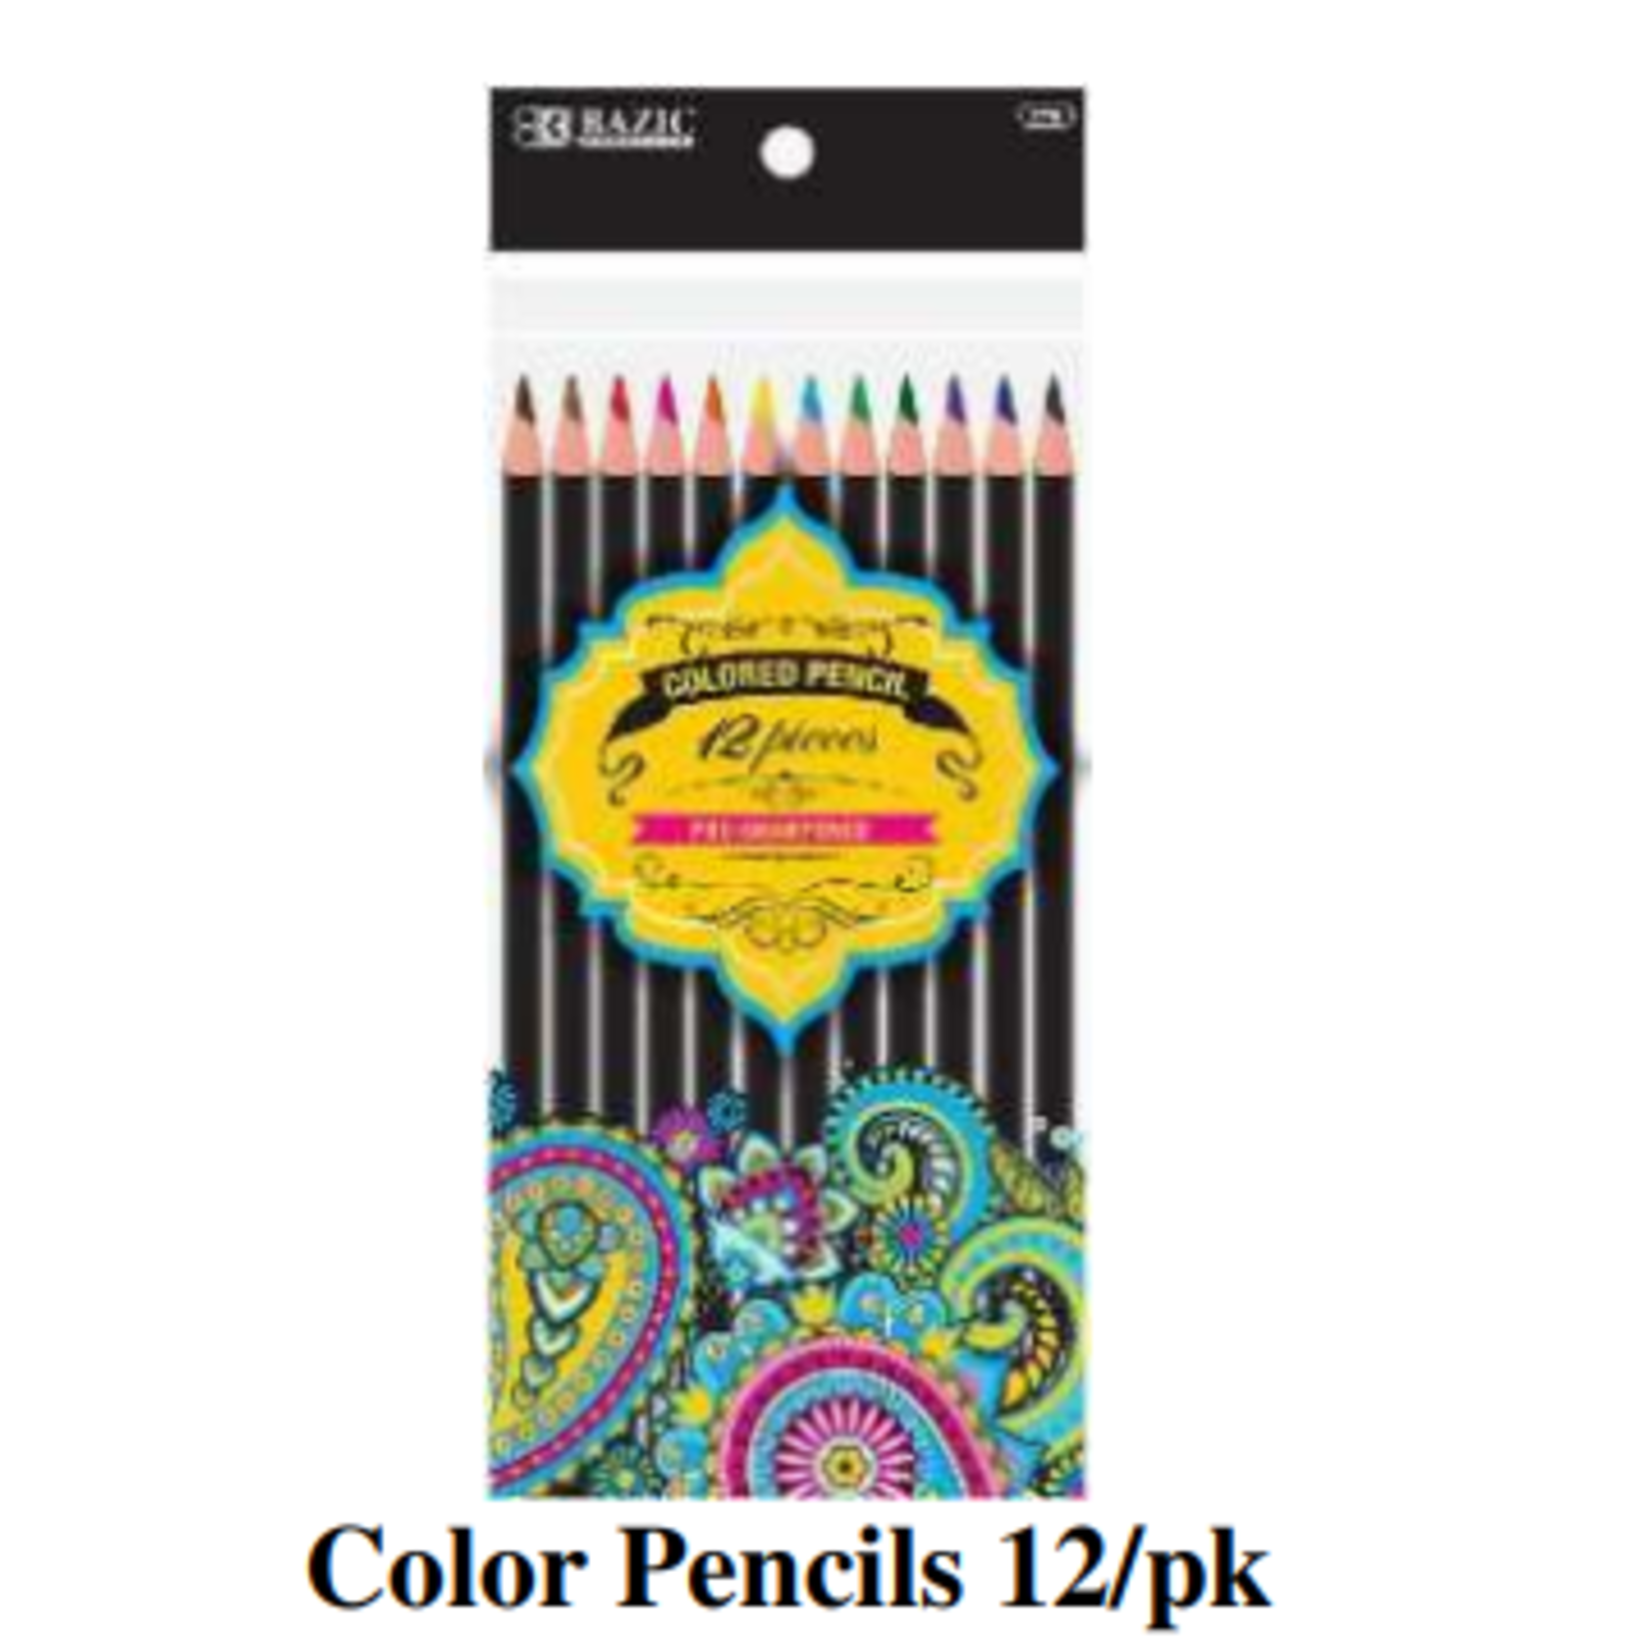 Pencil Crayons - 12 pk